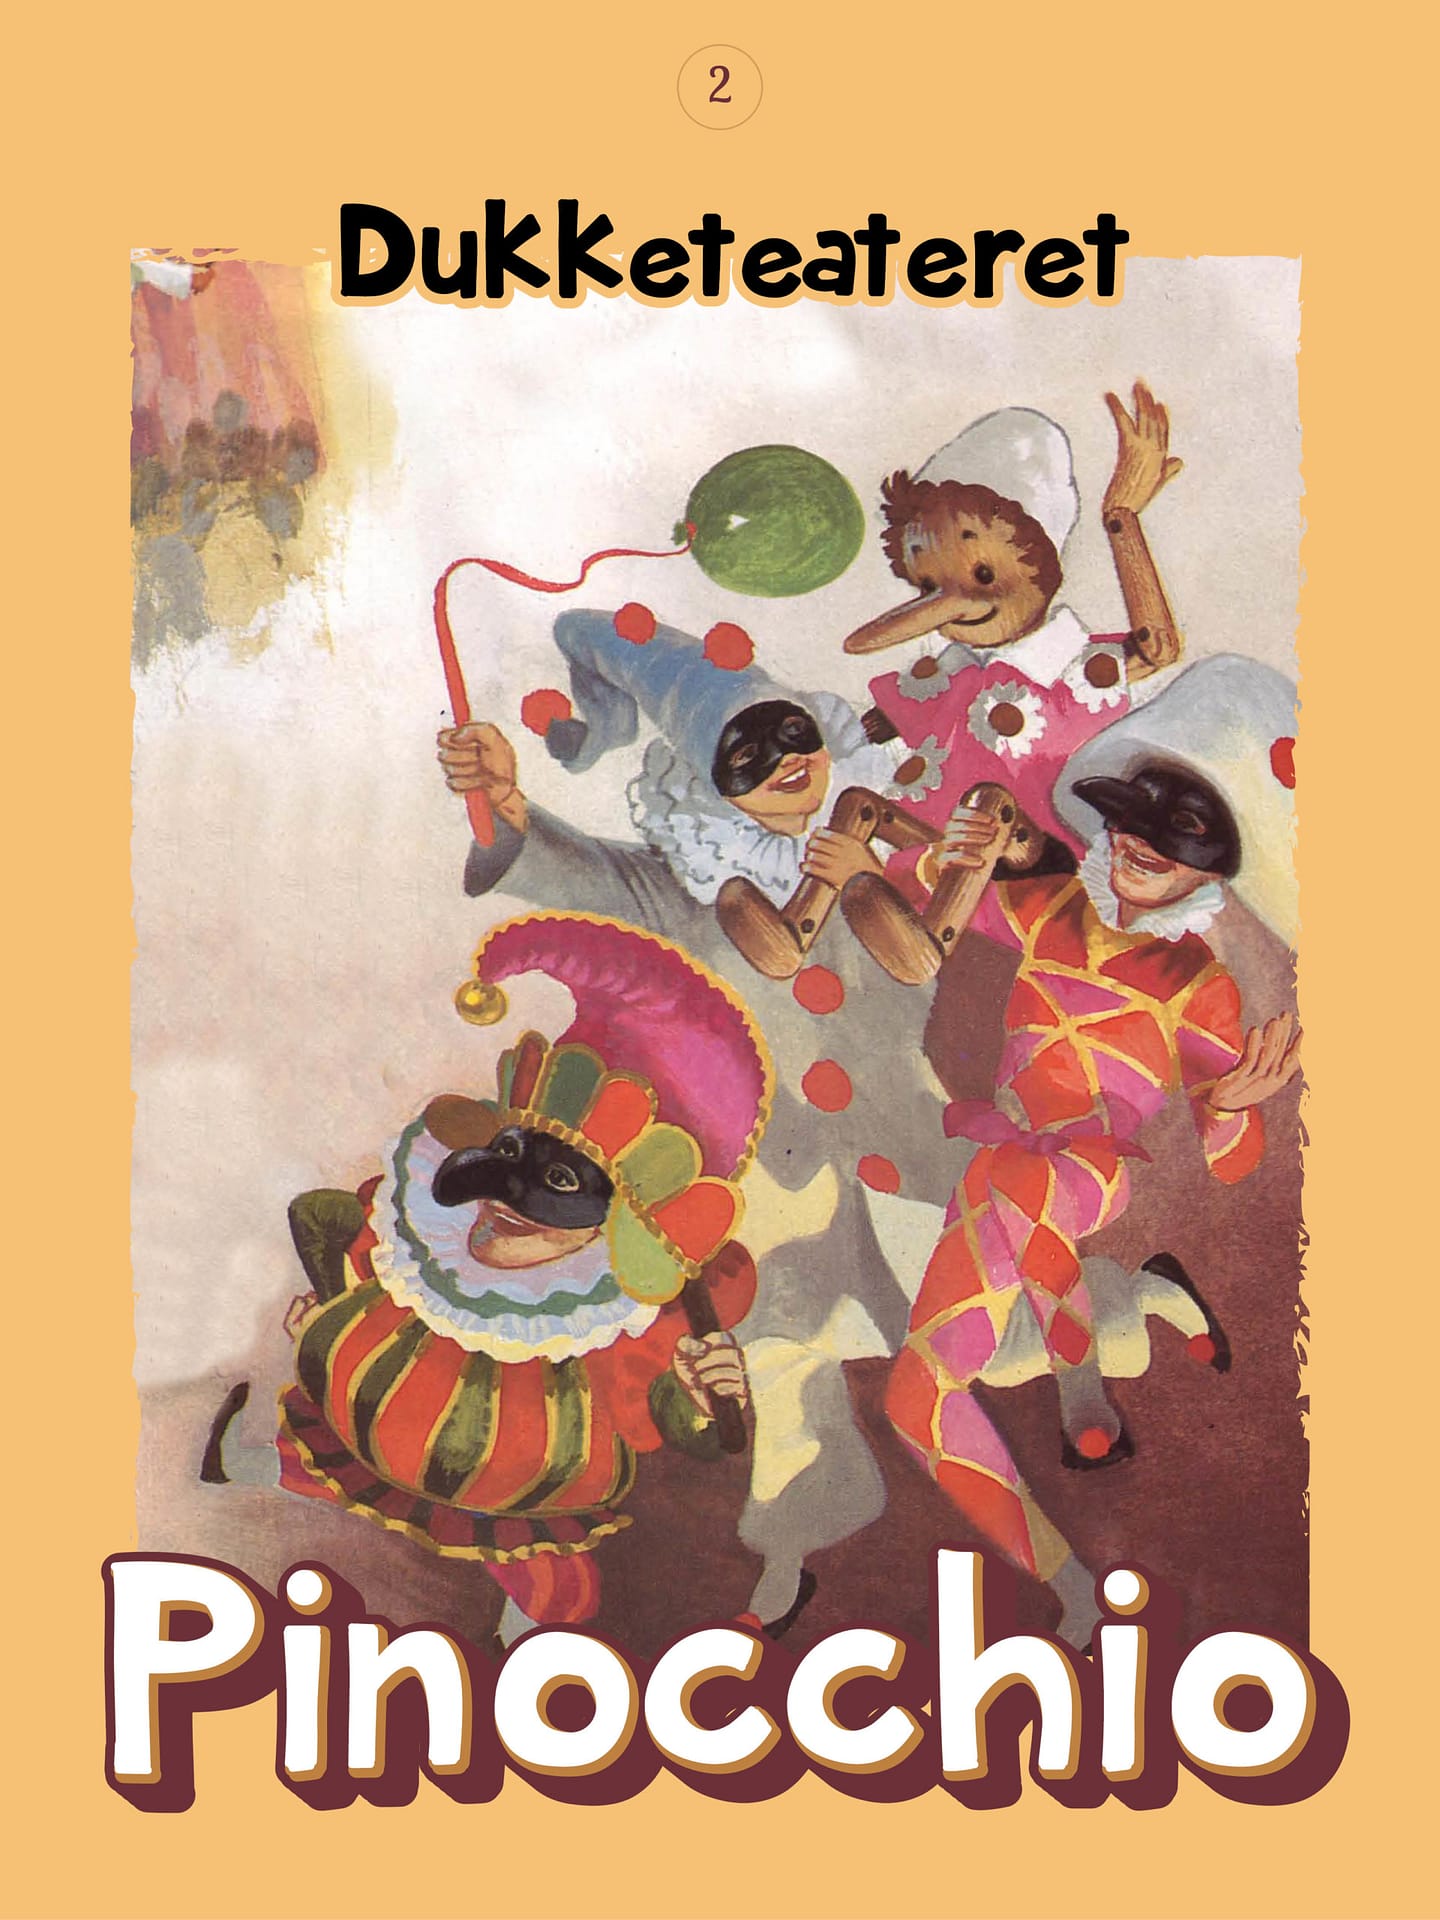 Pinocchio del 2, Dukketeateret